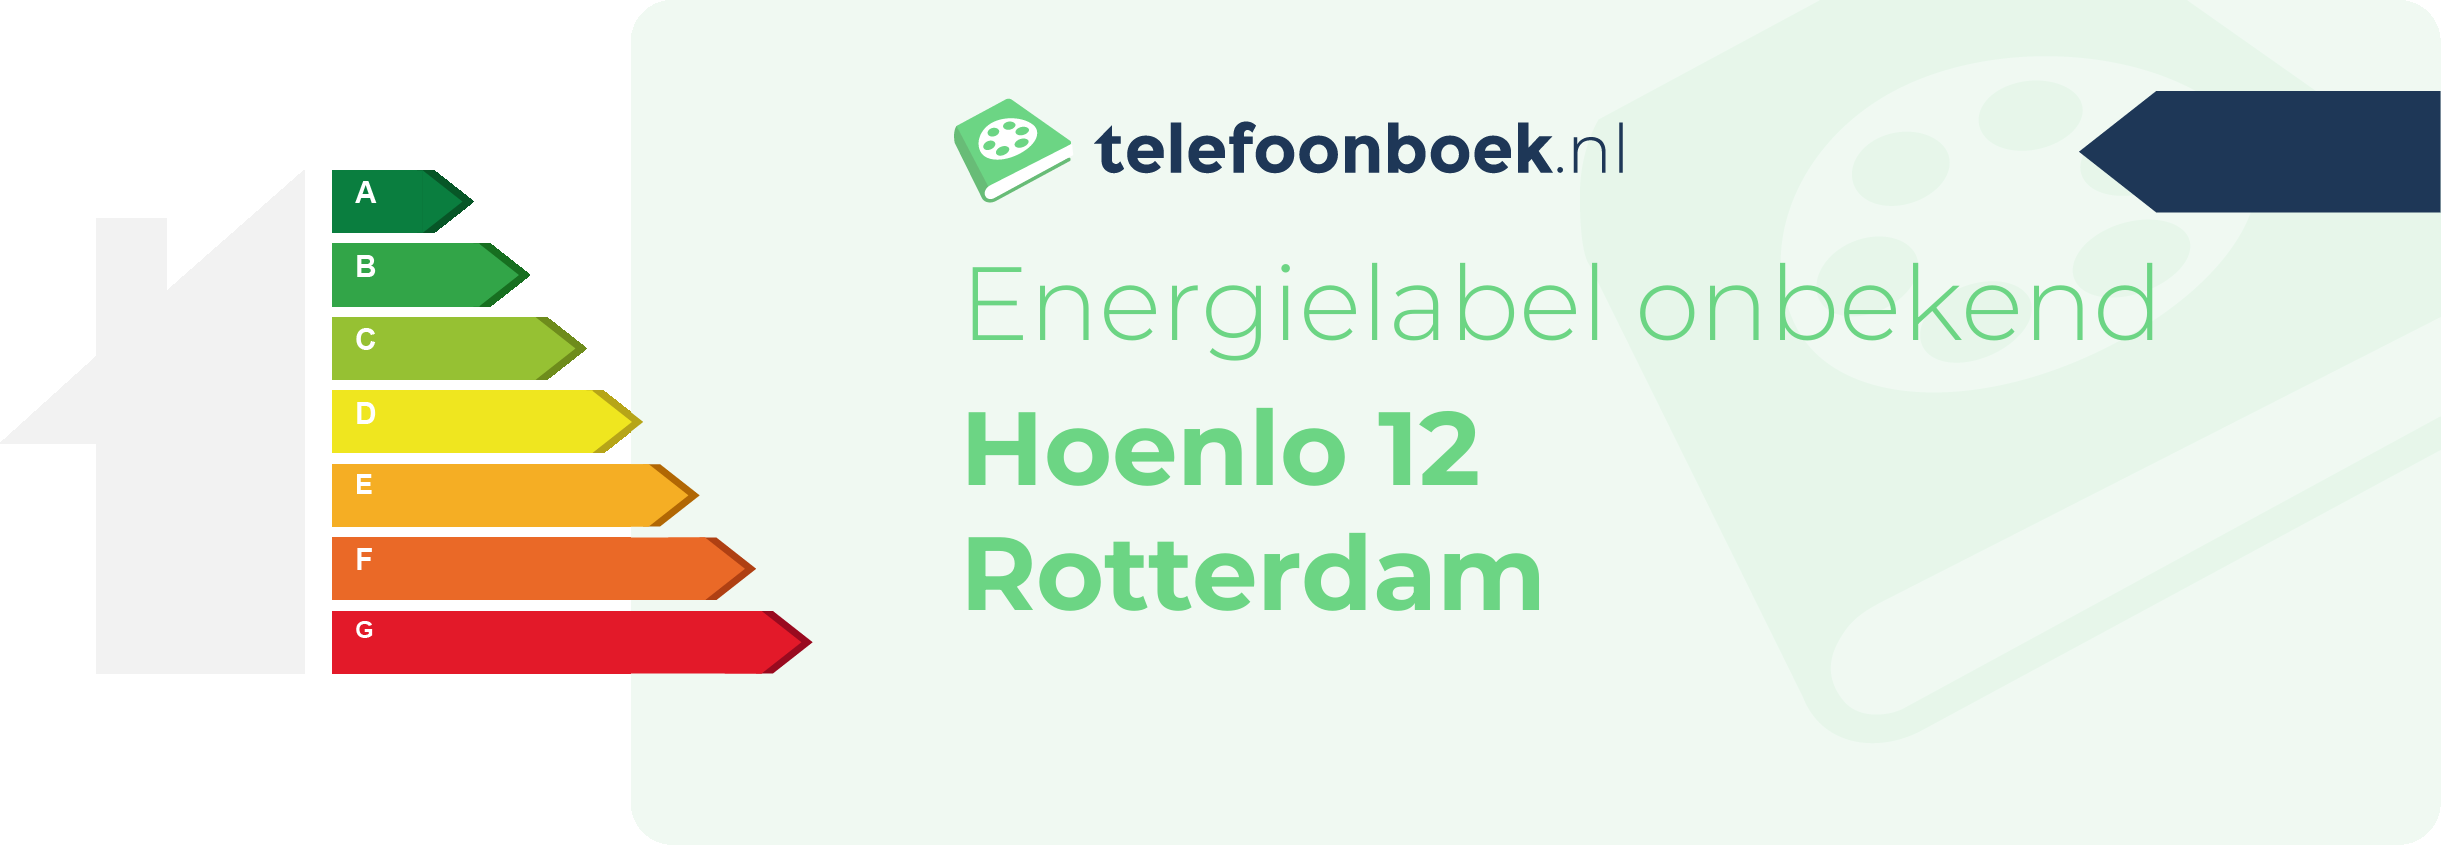 Energielabel Hoenlo 12 Rotterdam